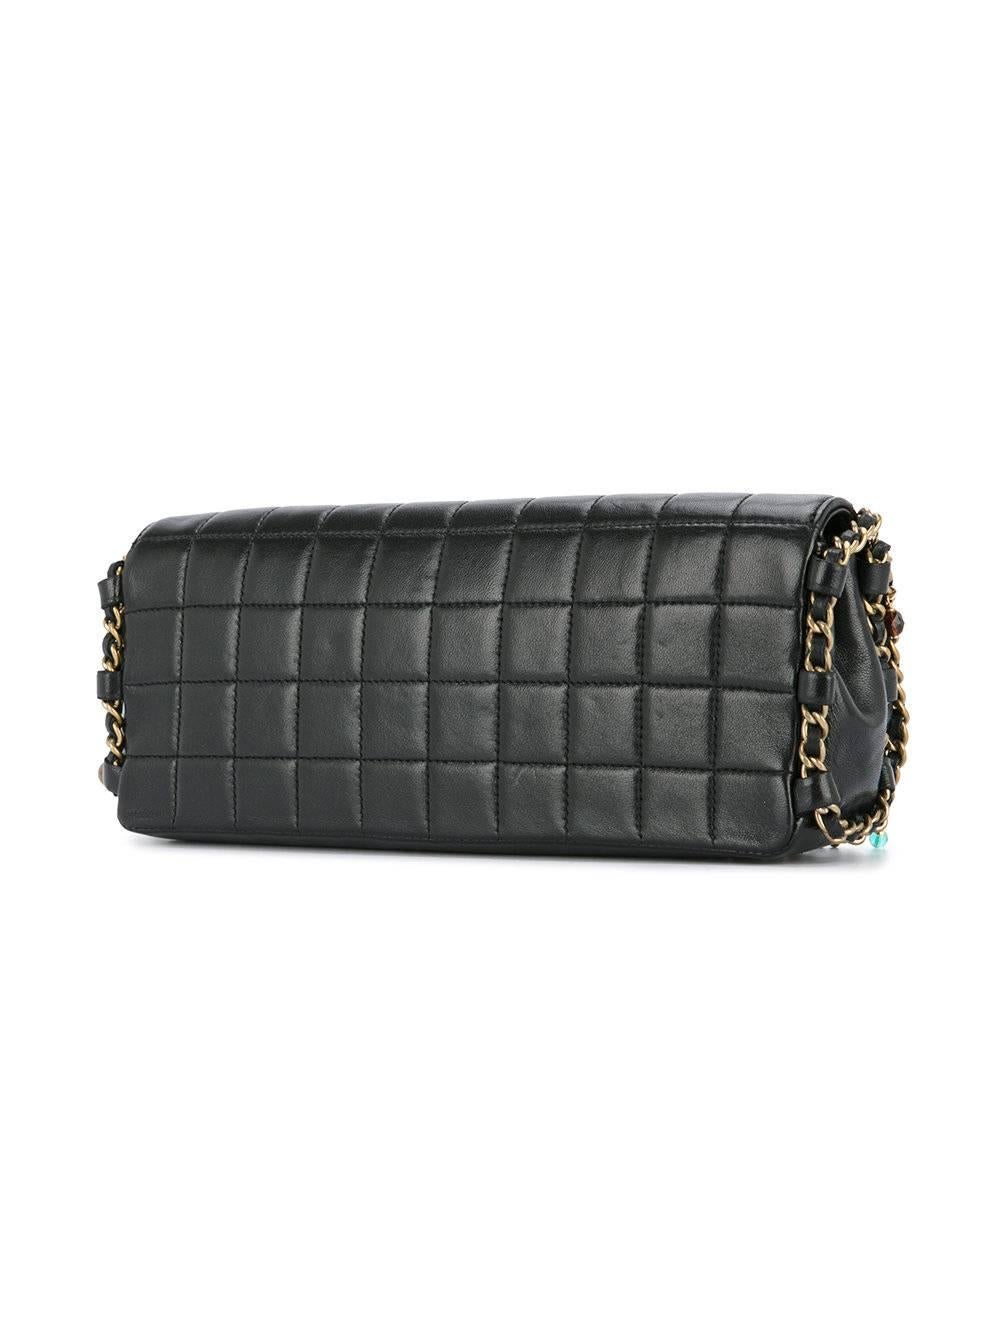 Women's Chanel Black Leather Multi Color Gripoix Evening Clutch Shoulder Flap Bag